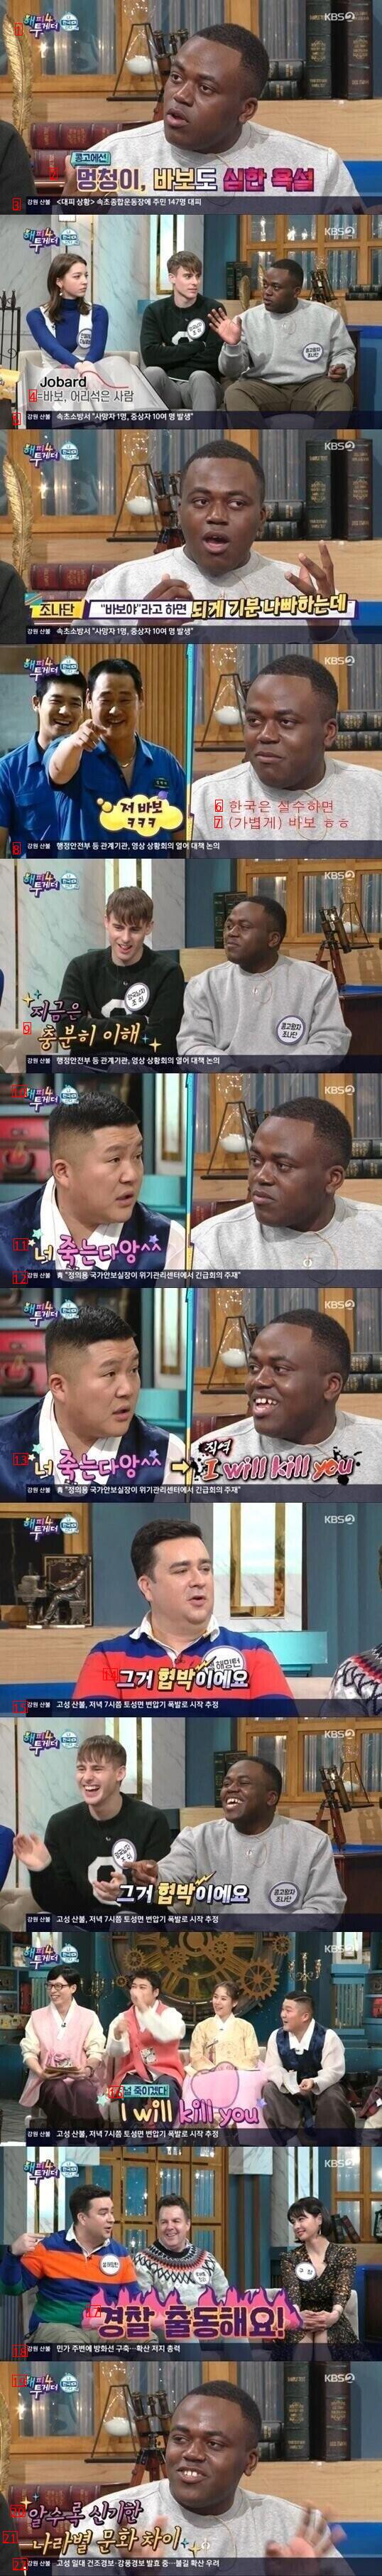 고전] 외국인들에겐 수위가 너무 높았던 한국식 농담.jpg